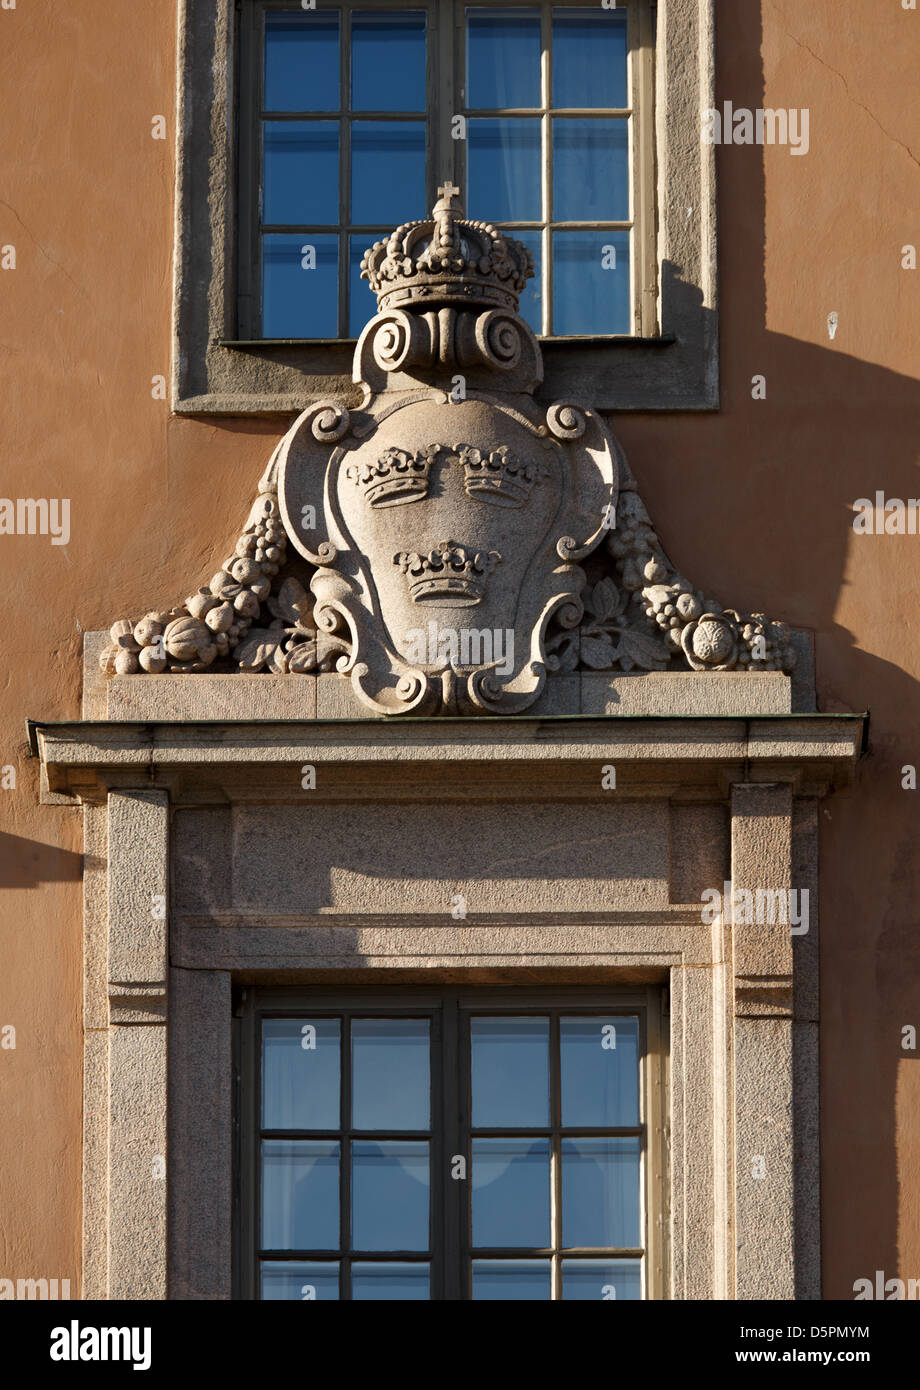 El escudo de armas real con tres coronas decora la fachada de la Embajada del Reino de Suecia en Helsinki, Finlandia. Foto de stock